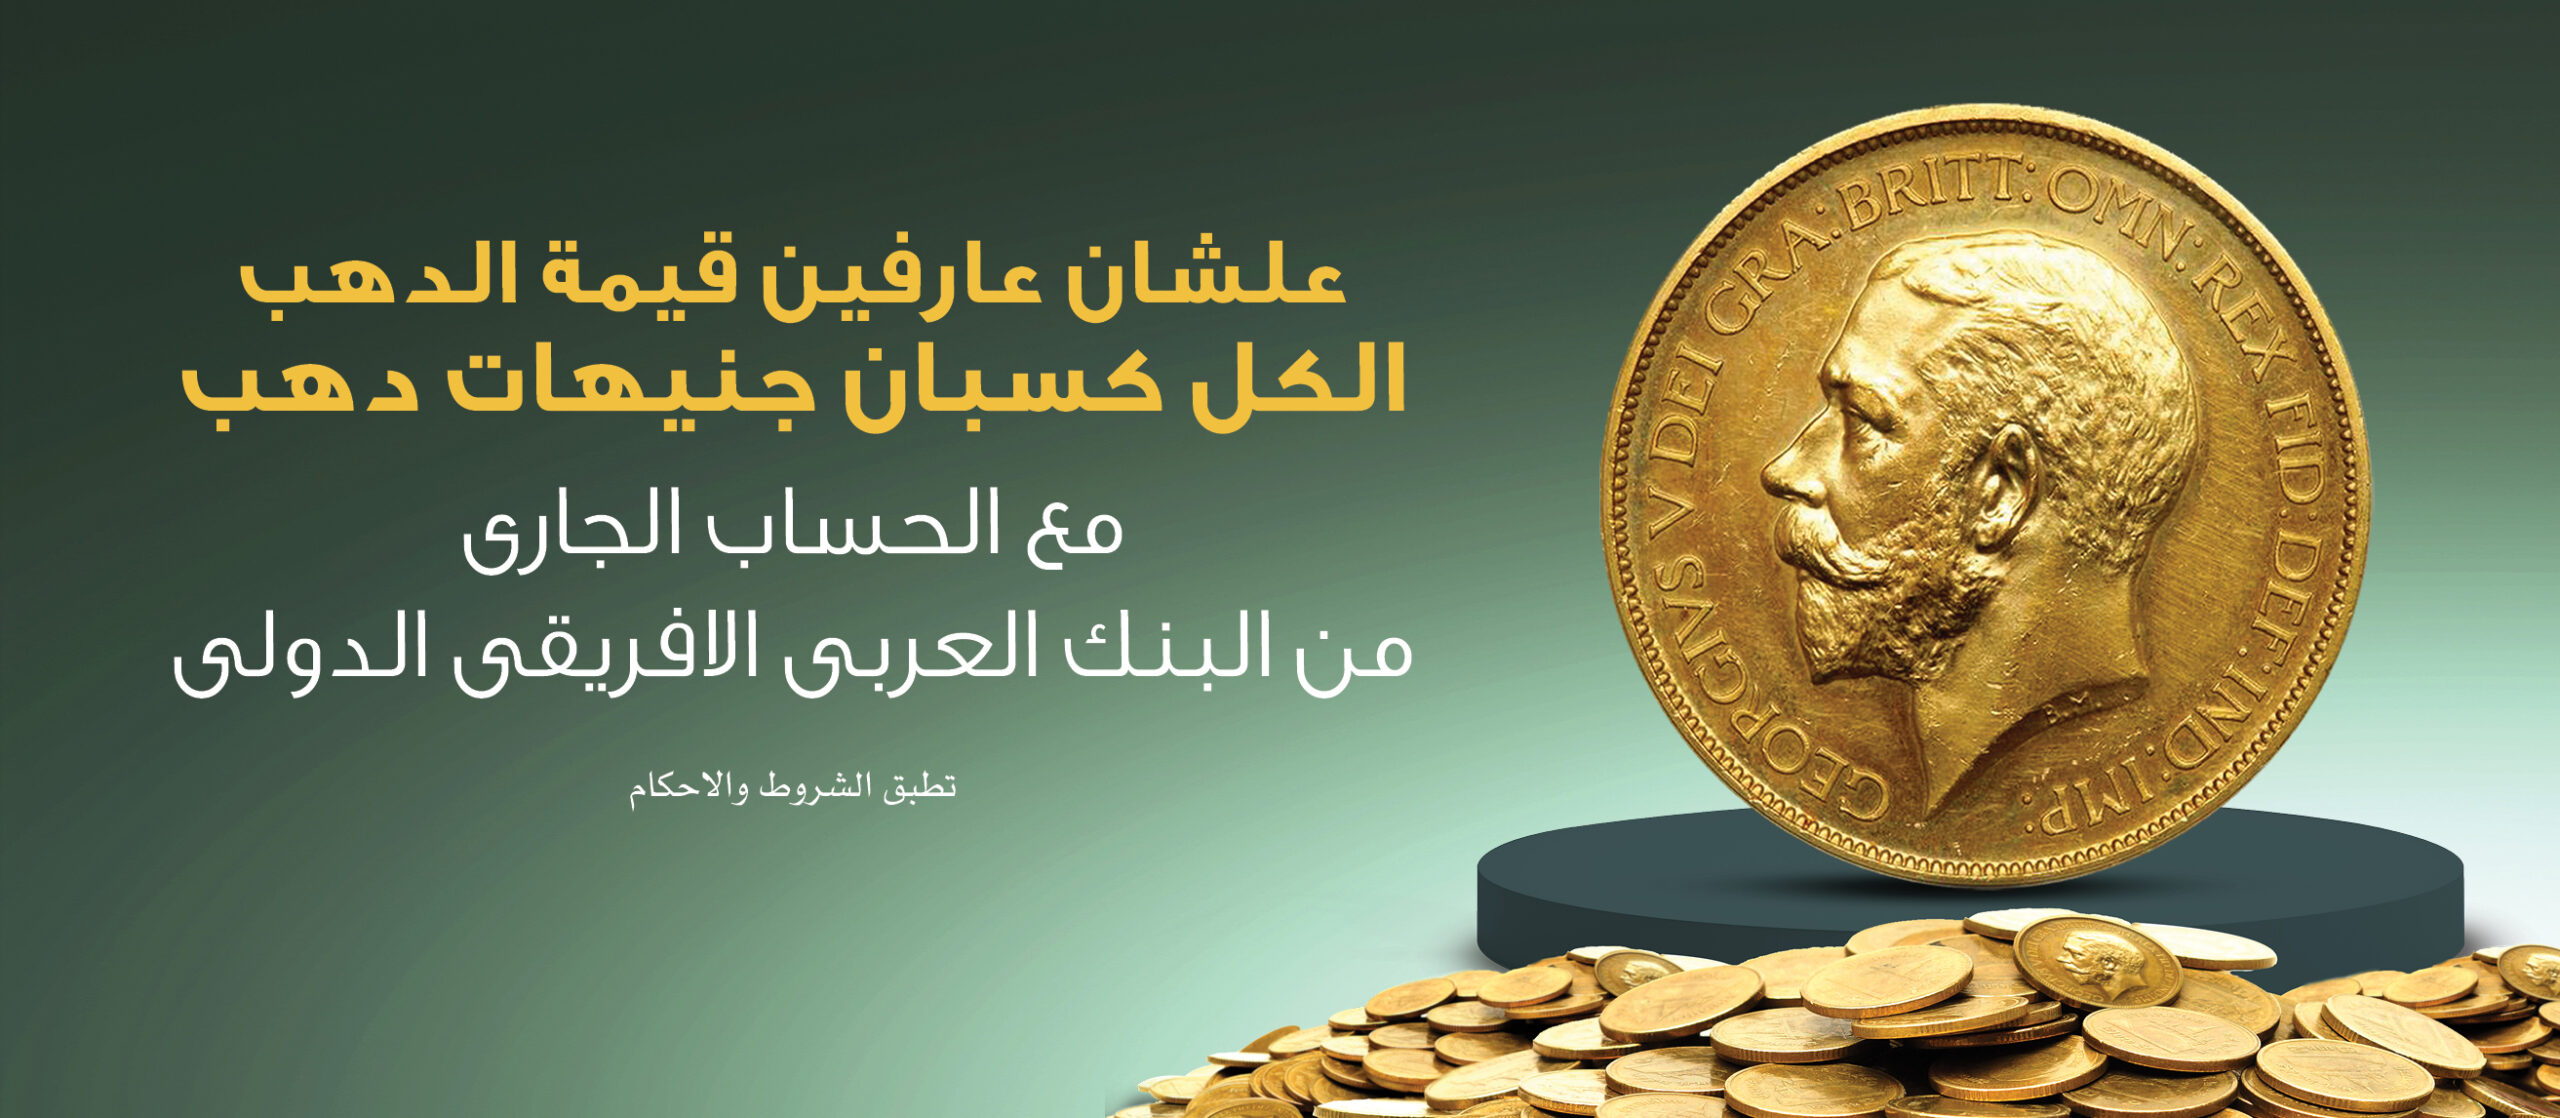 تفاصيل الحصول على جنيهات ذهب من البنك العربي الأفريقي